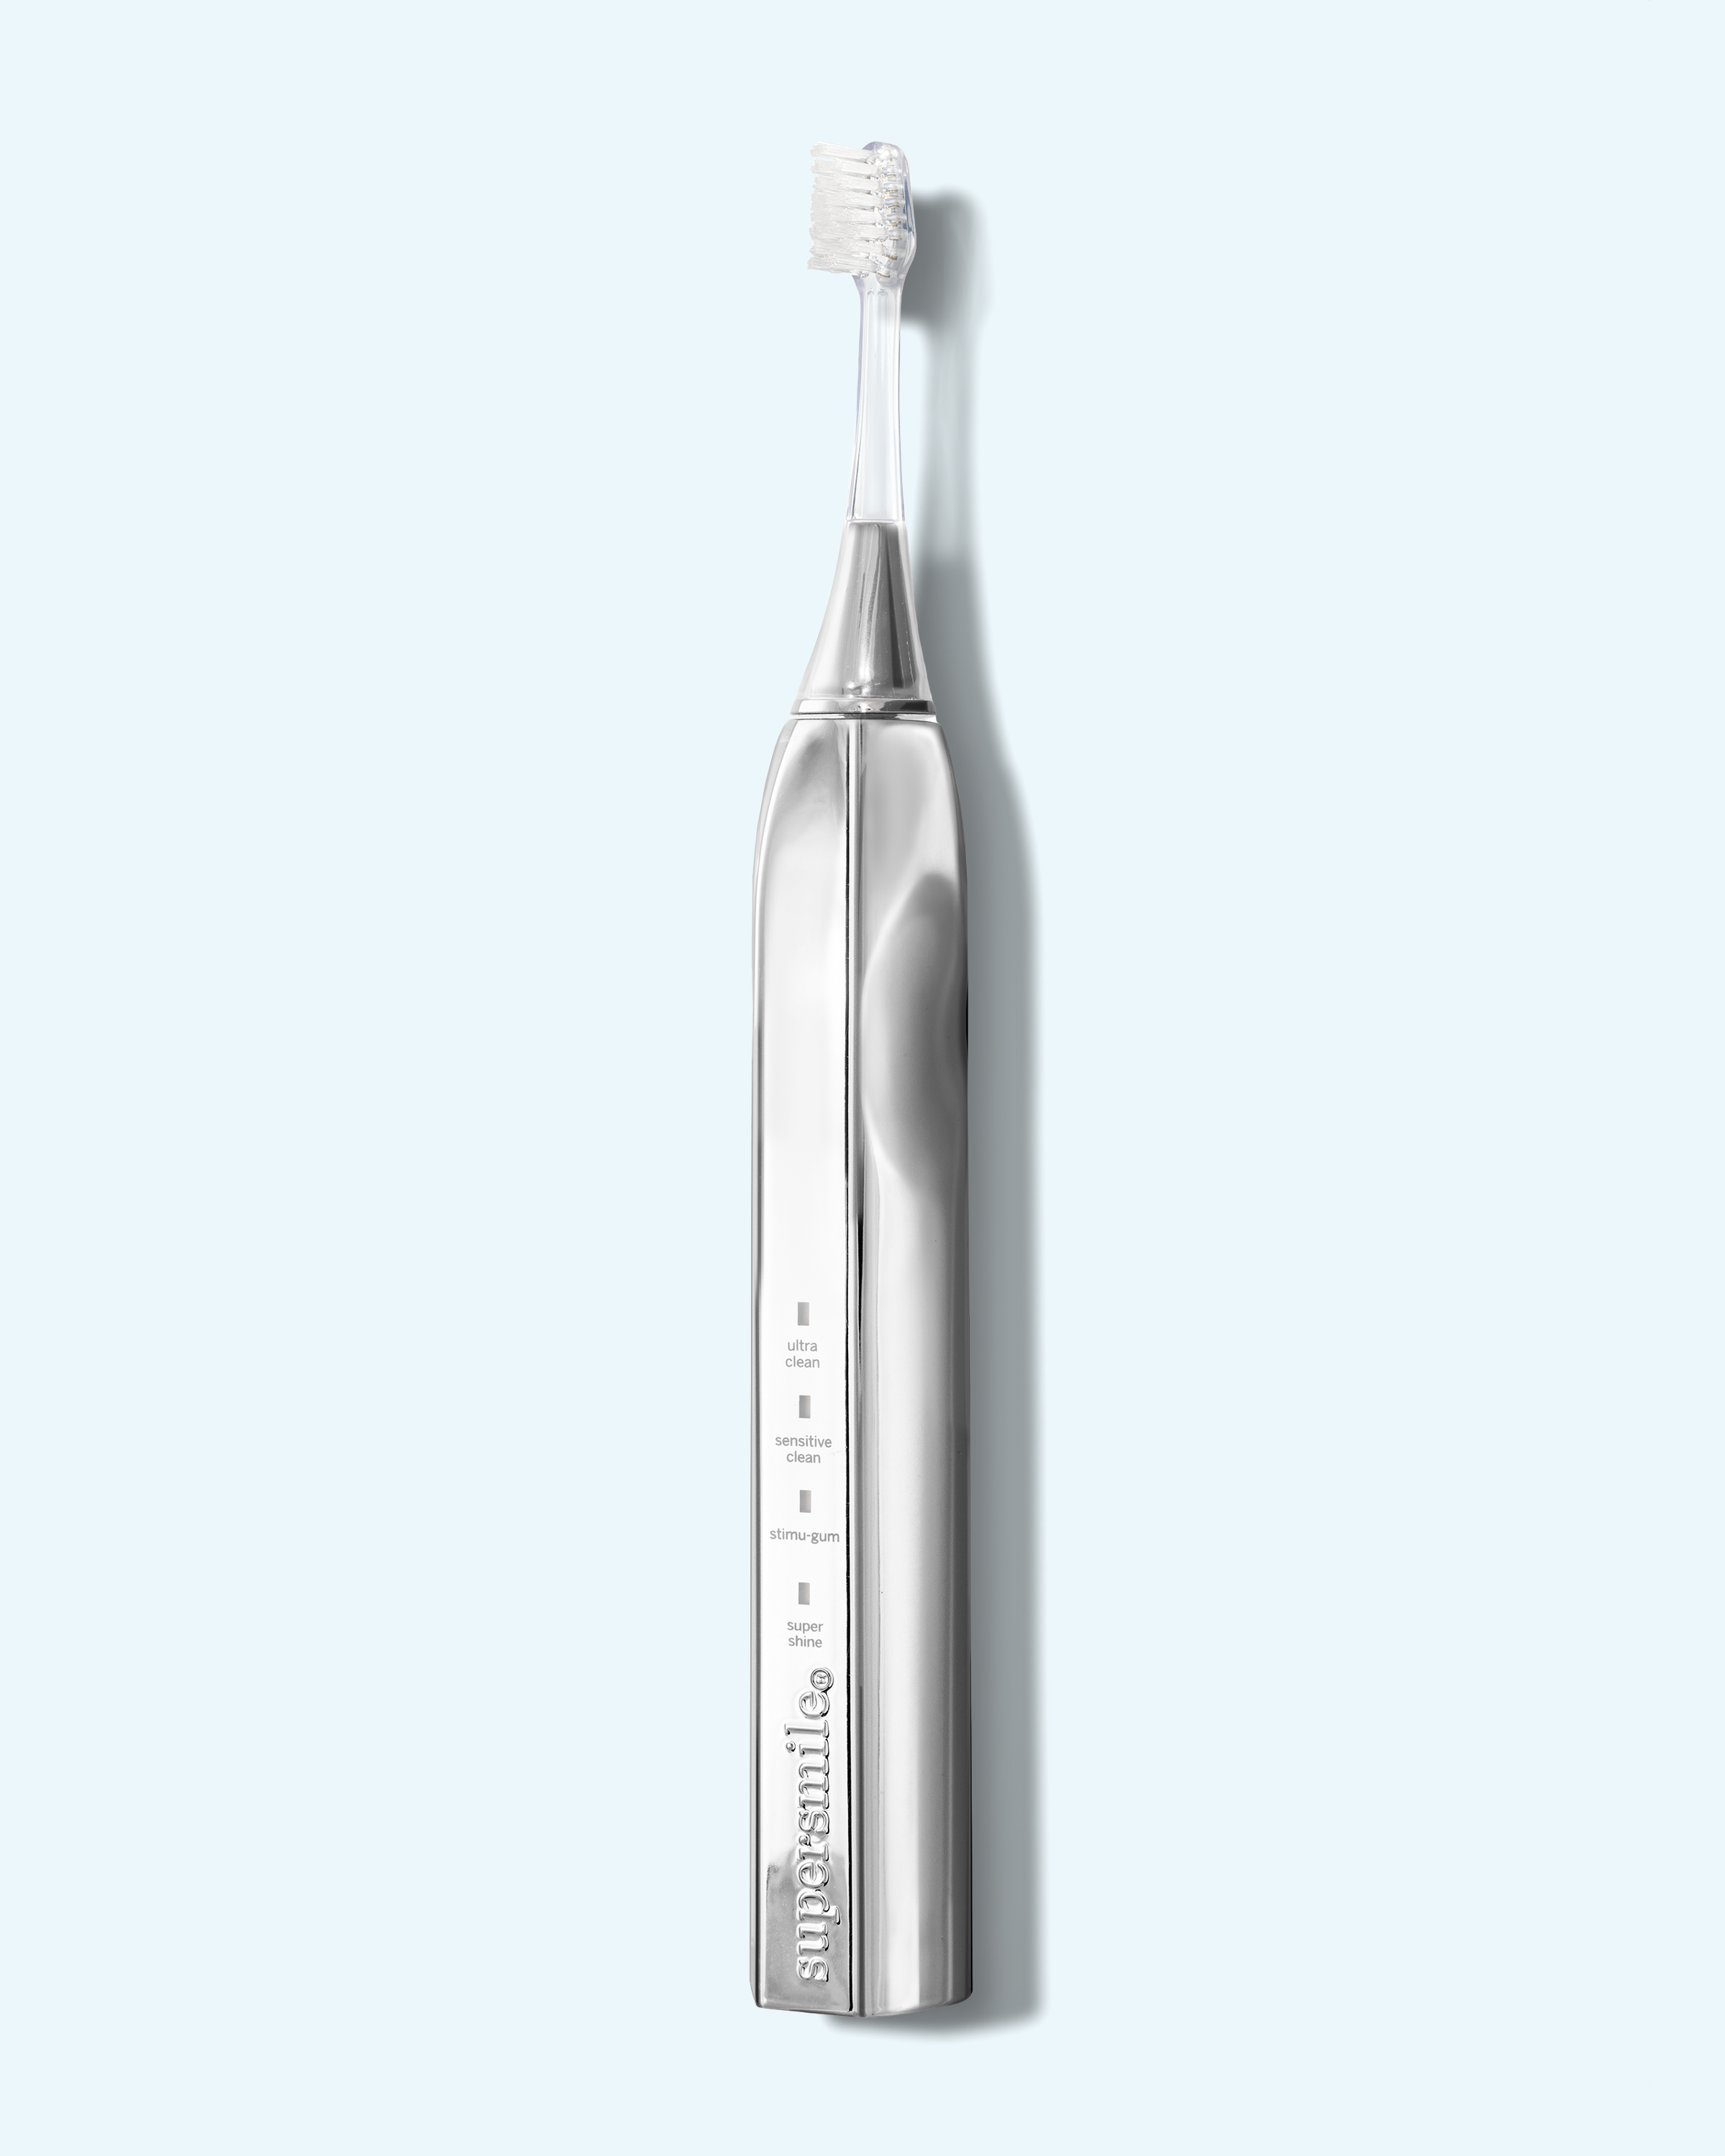 zina45™ sonic toothbrush